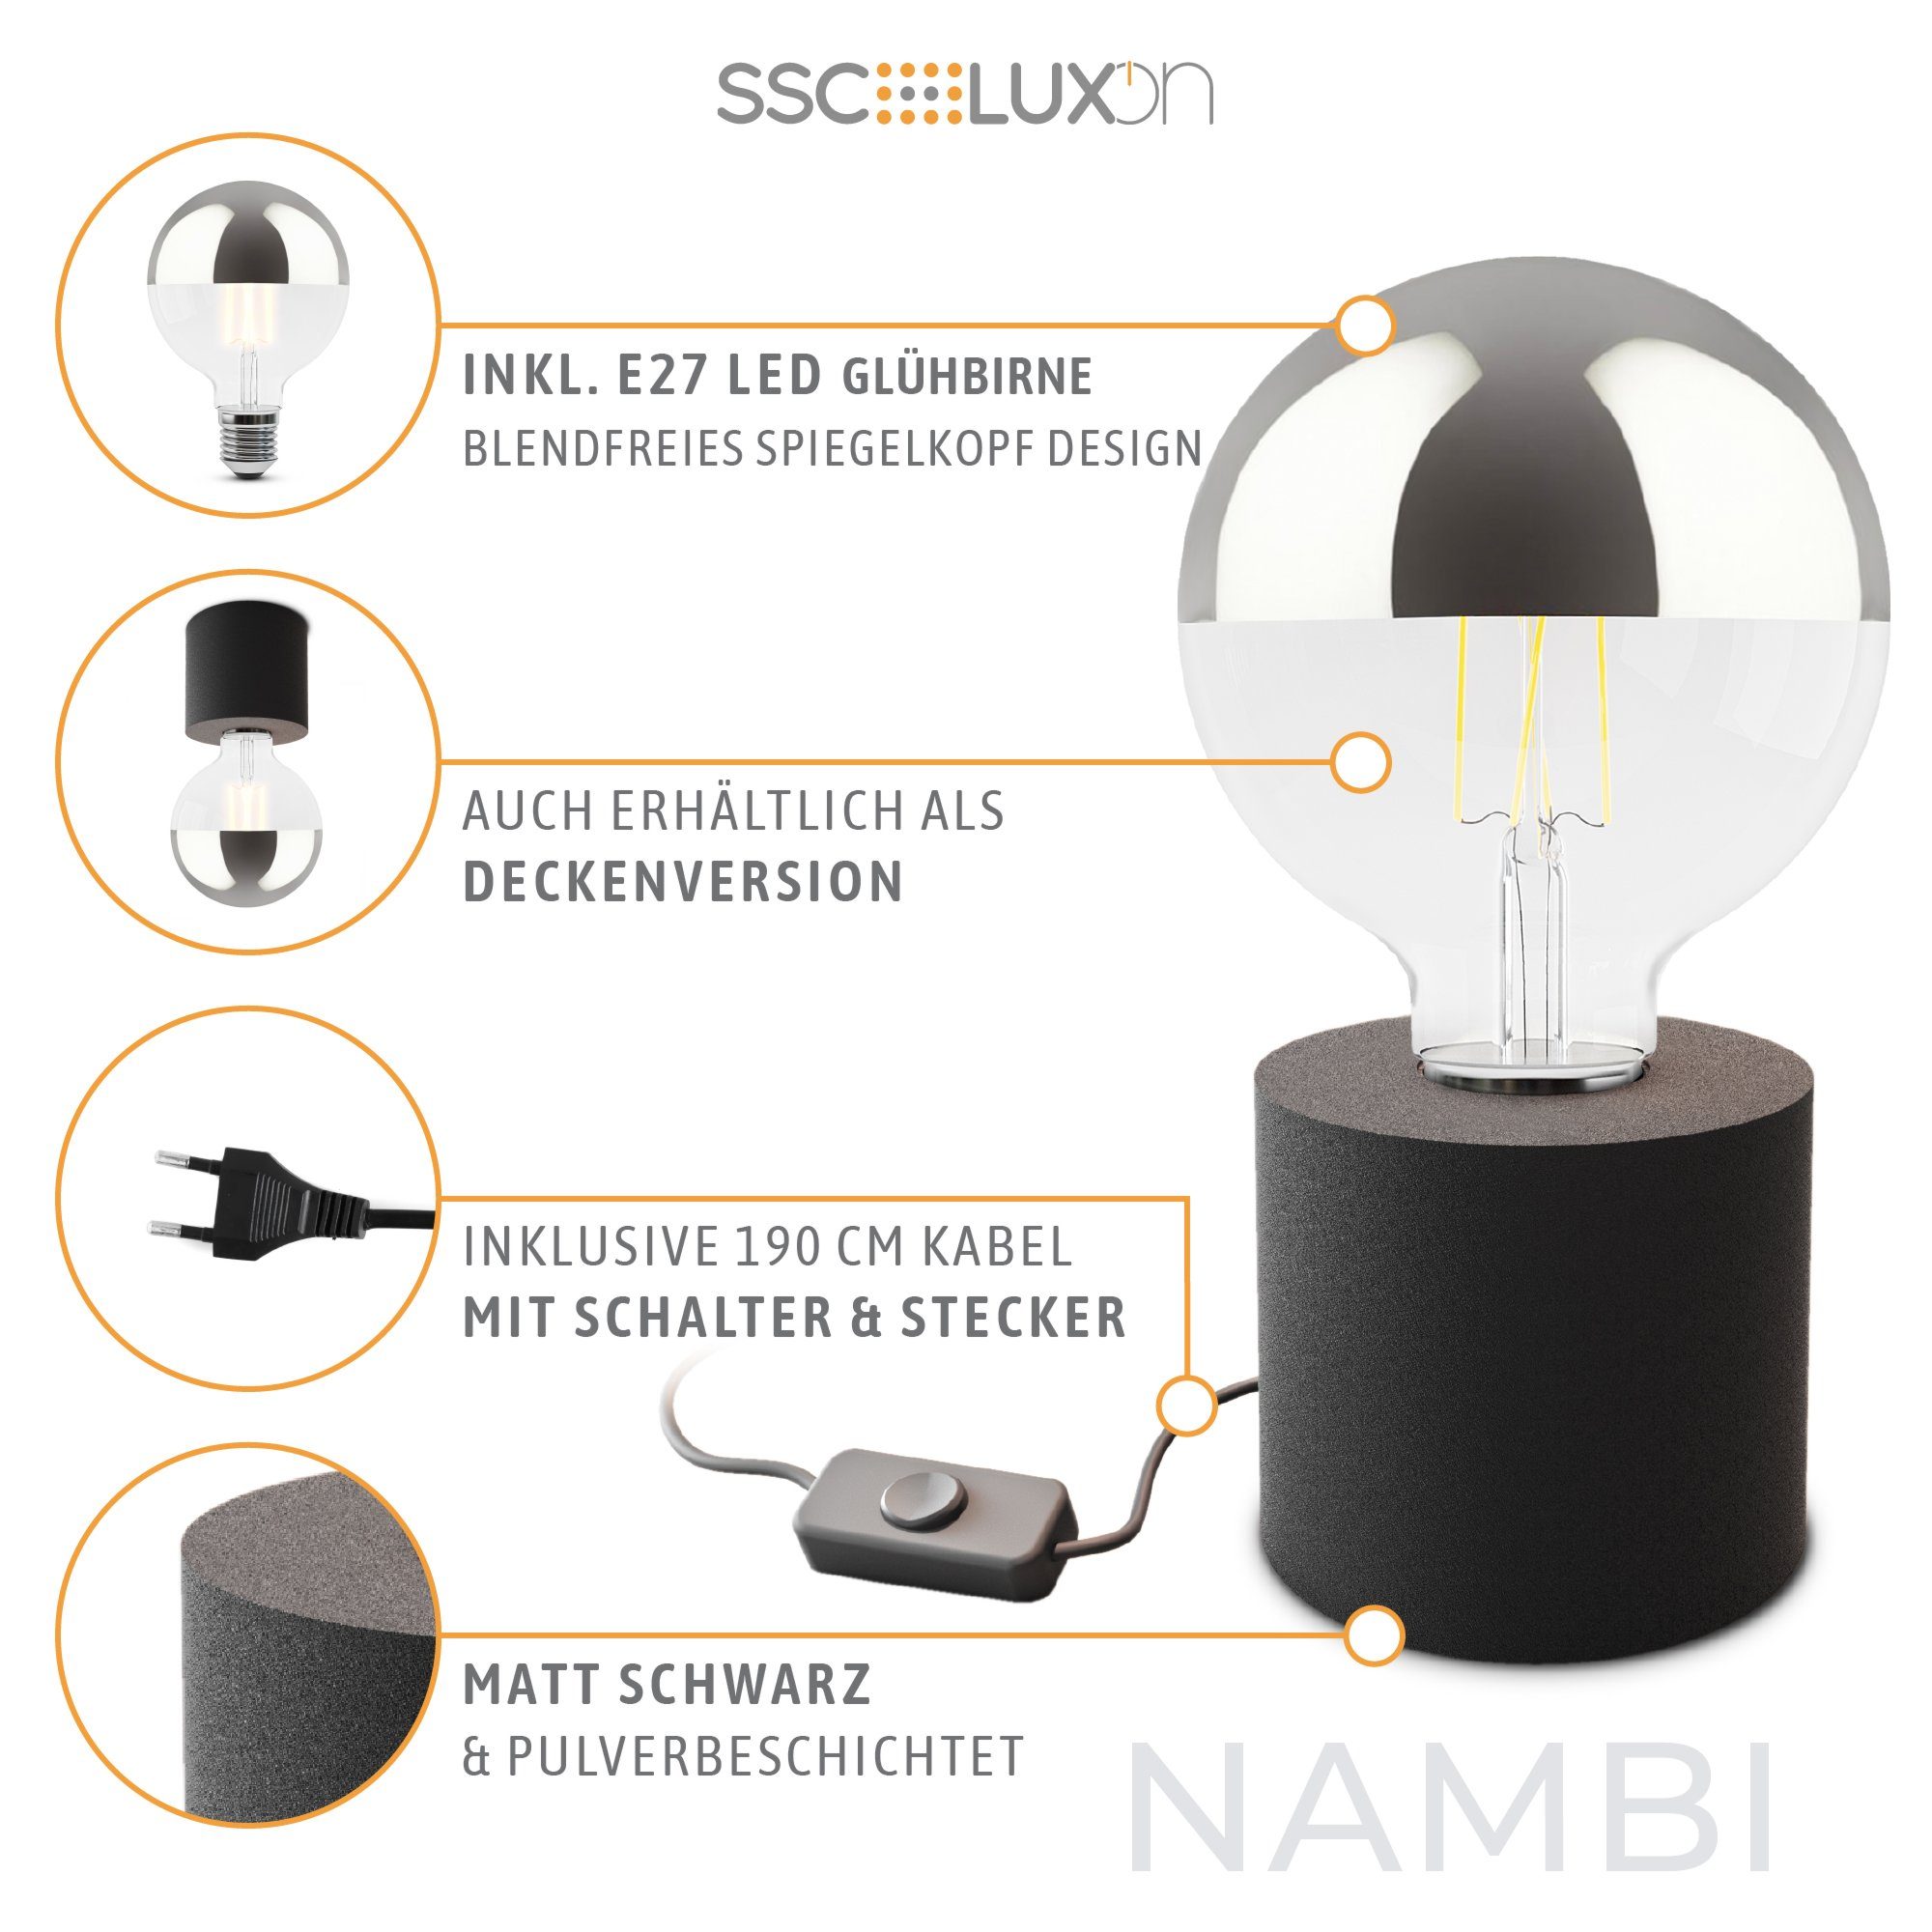 NAMBI schwarz Globe, mit LED Warmweiß Tischleuchte Design E27 LED Spiegelkopf Bilderleuchte SSC-LUXon